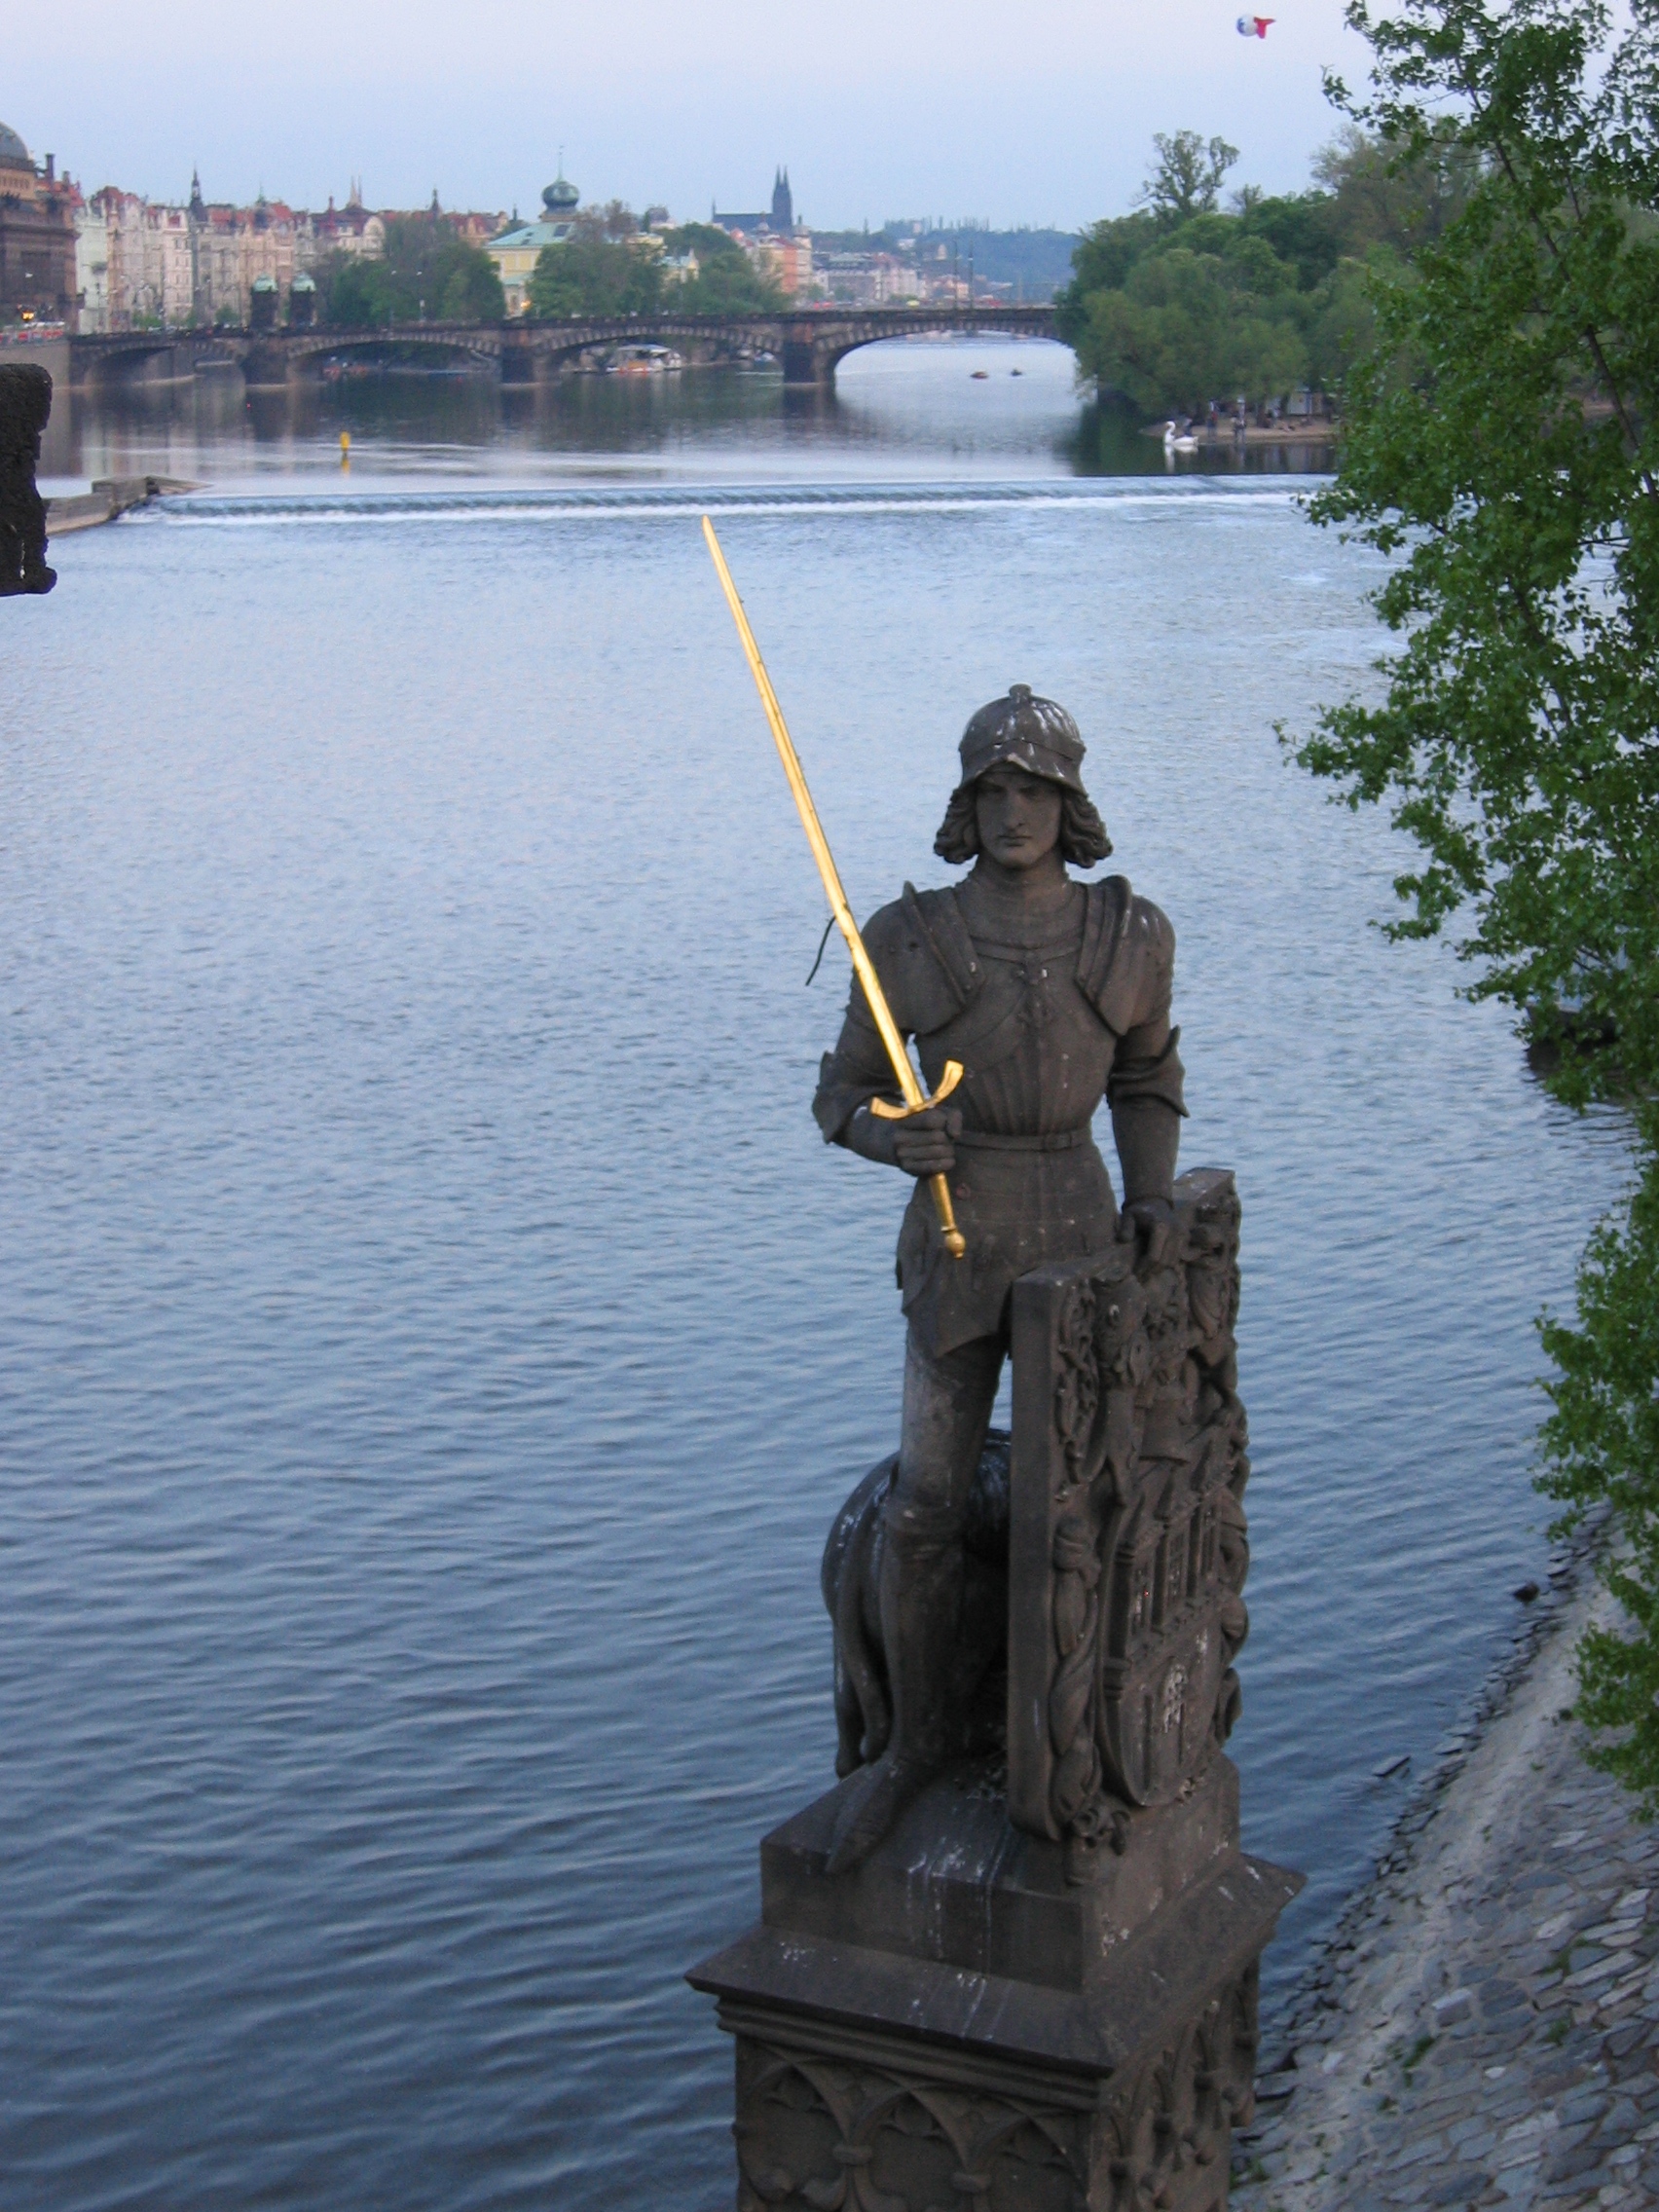 Praga, 2004. Estatua